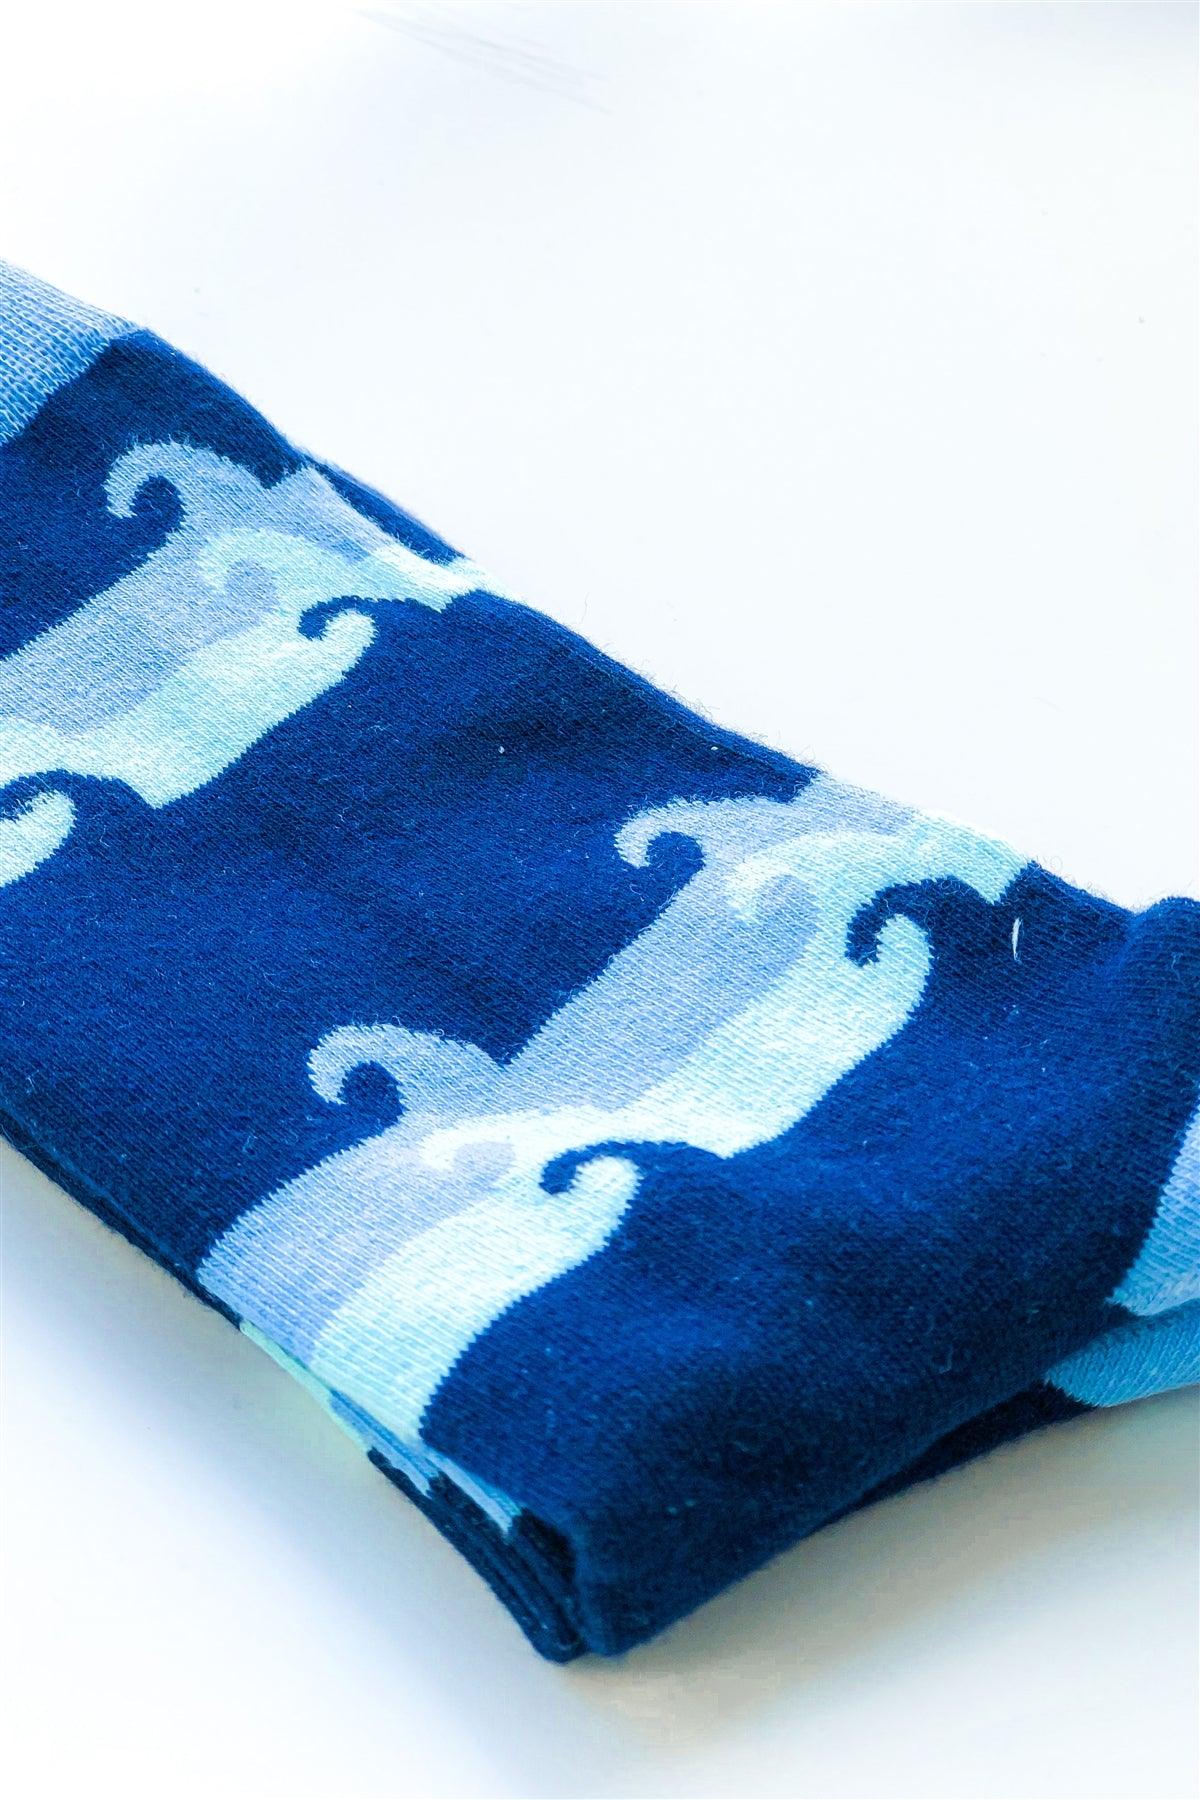 Blue Multi Wave Mid Calf Tube Socks /12 pairs